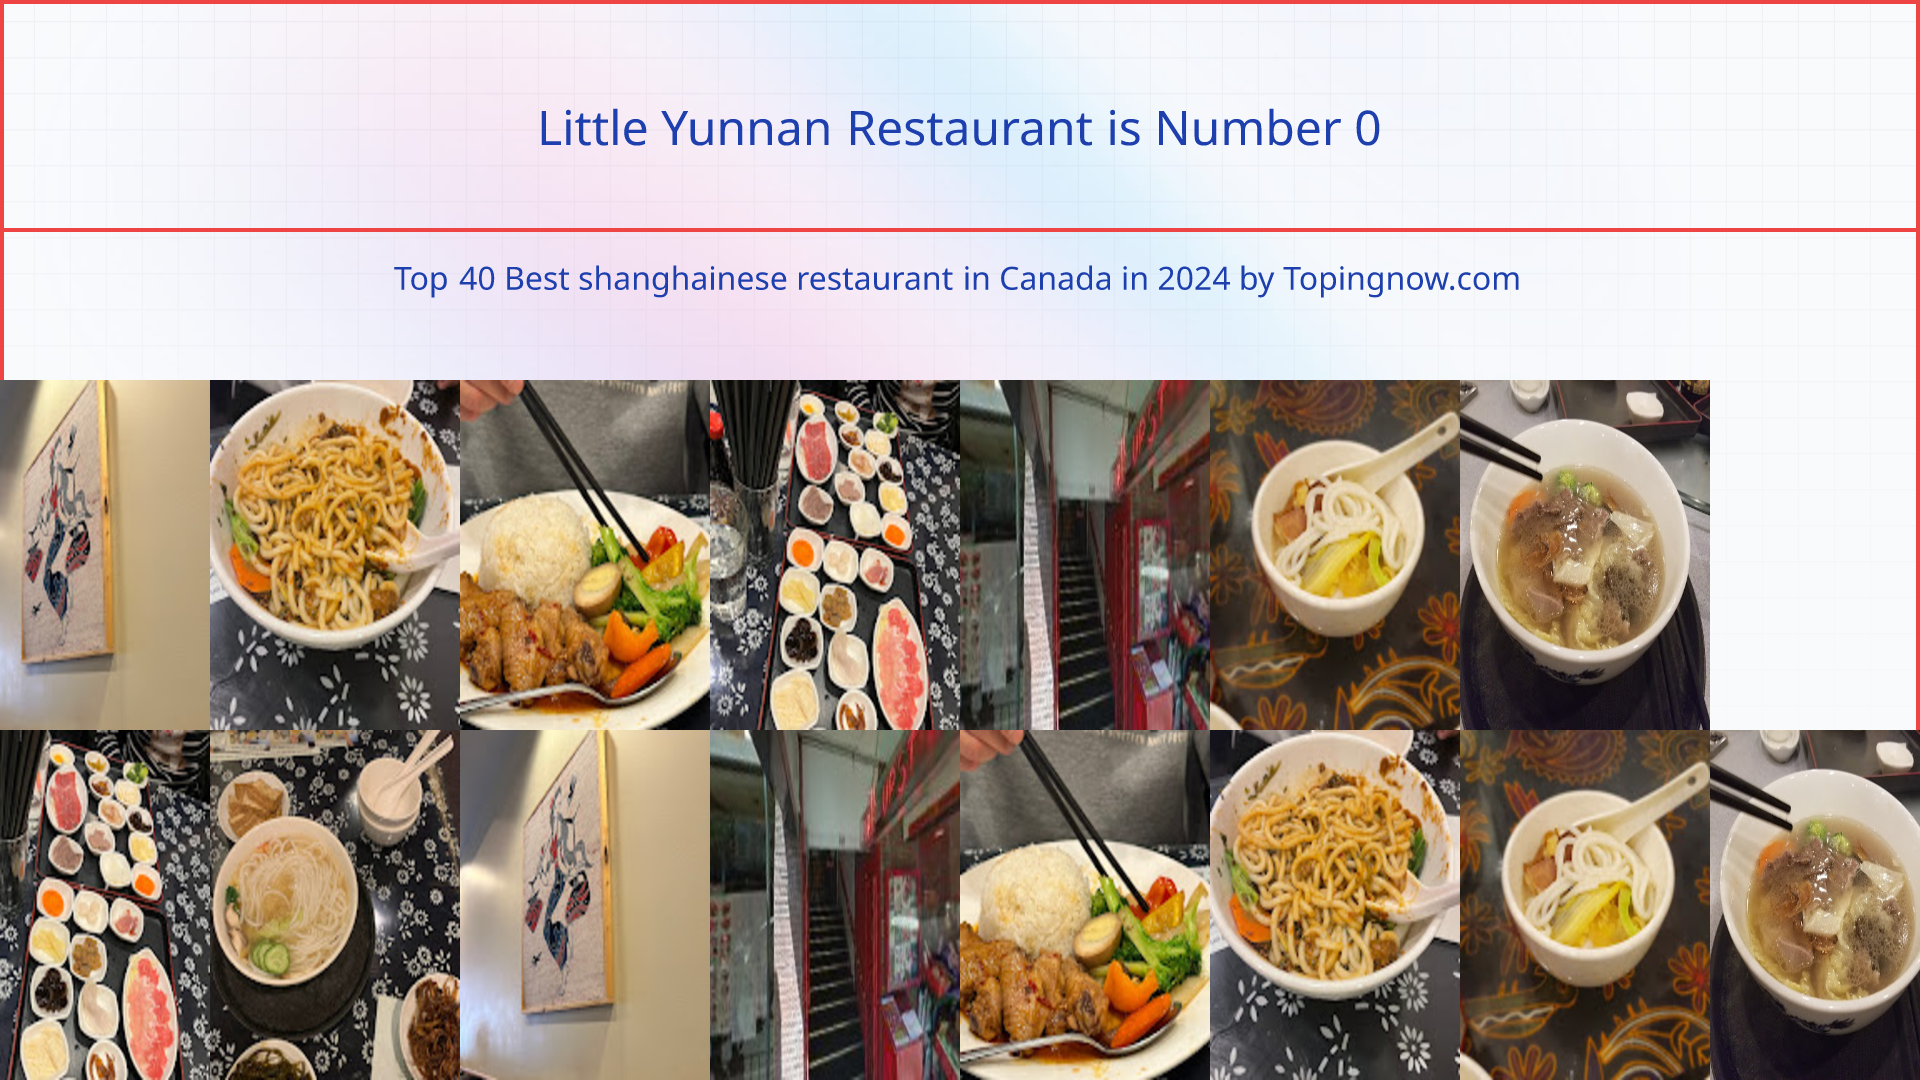 Little Yunnan Restaurant: Top 40 Best shanghainese restaurant in Canada in 2024